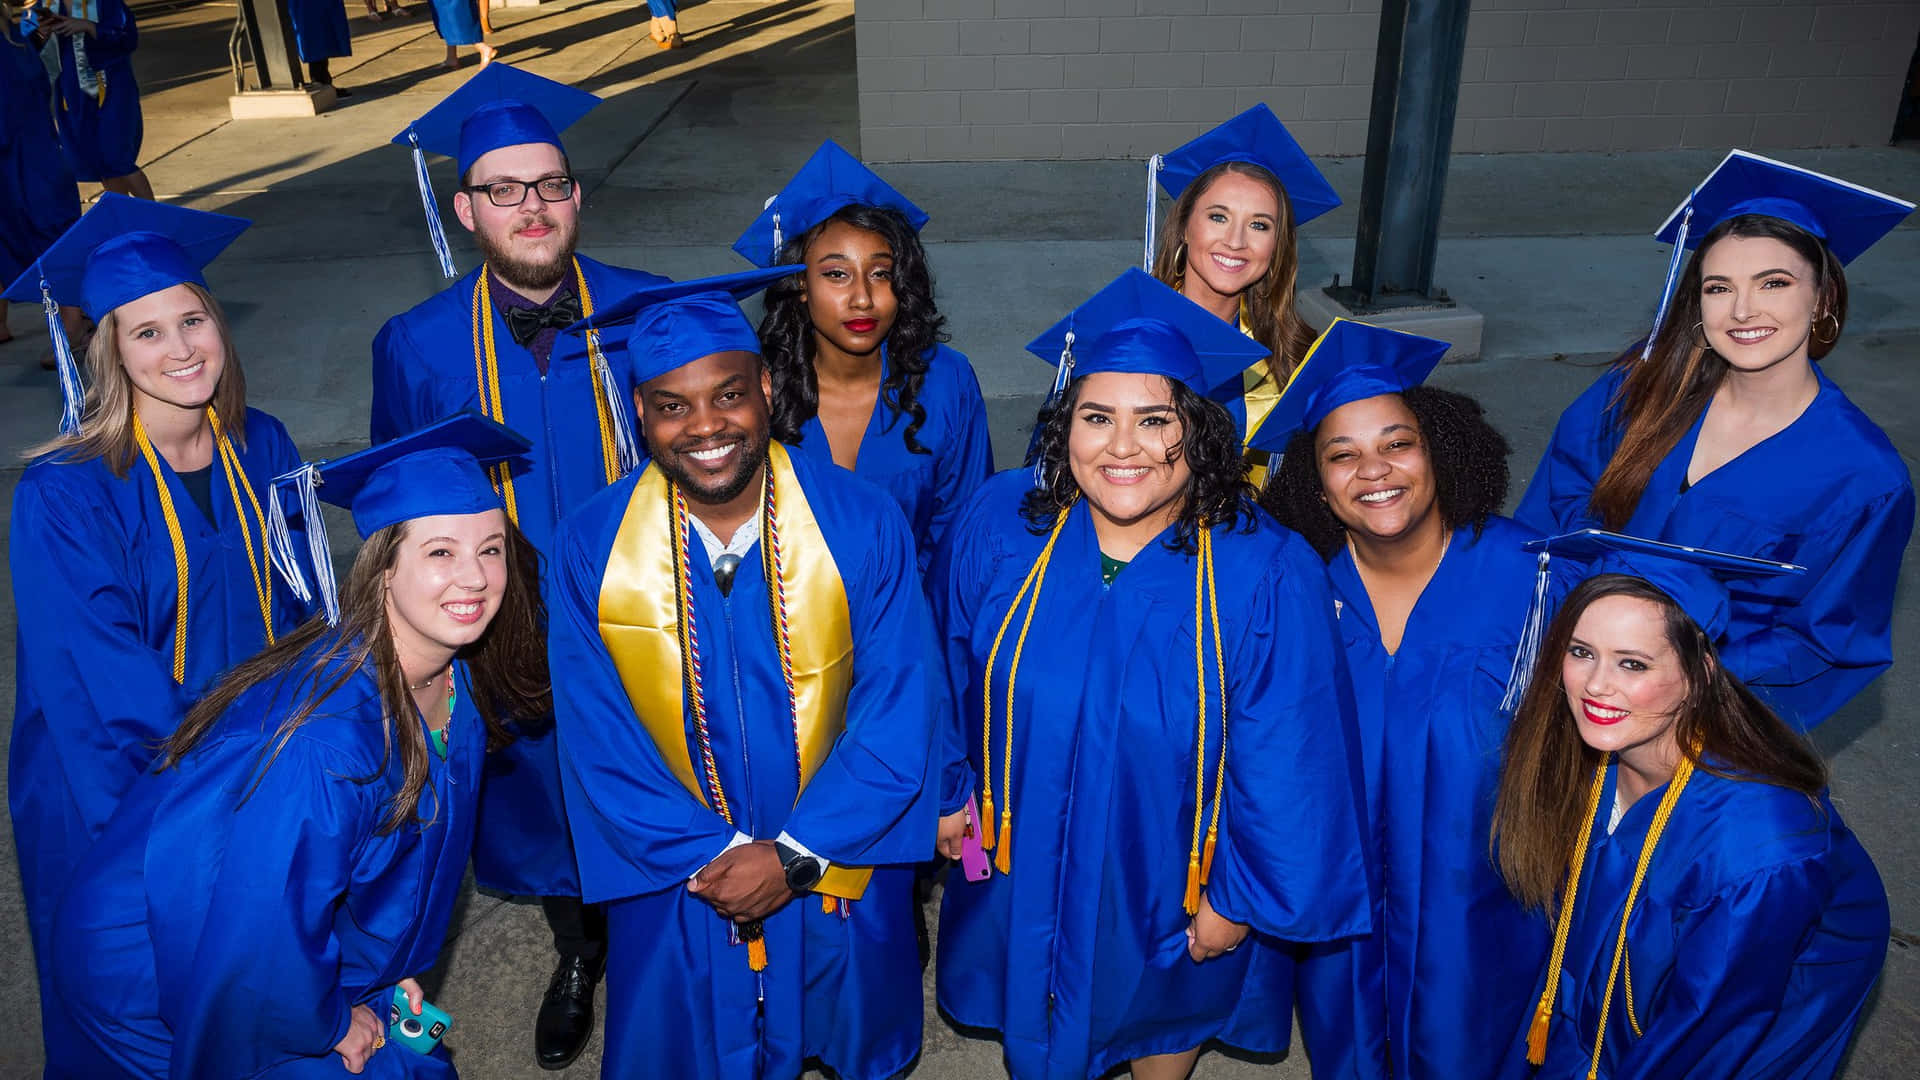 A Joyful Milestone: College Graduation Day